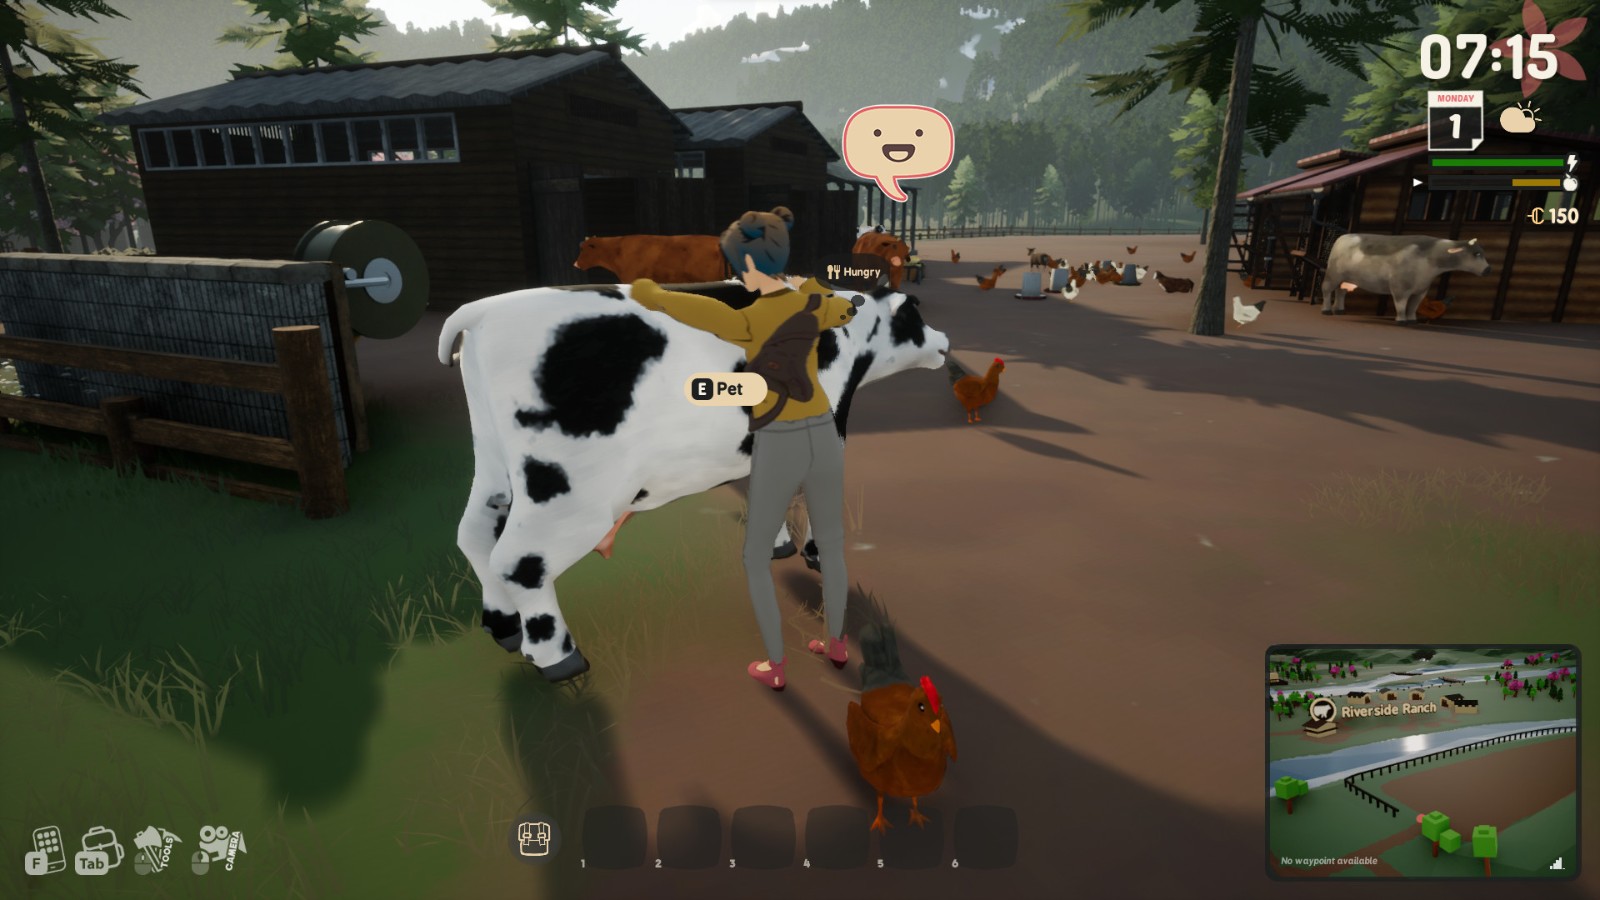 《风和日暖》新预告公开 温馨乡村农场生活模拟游戏